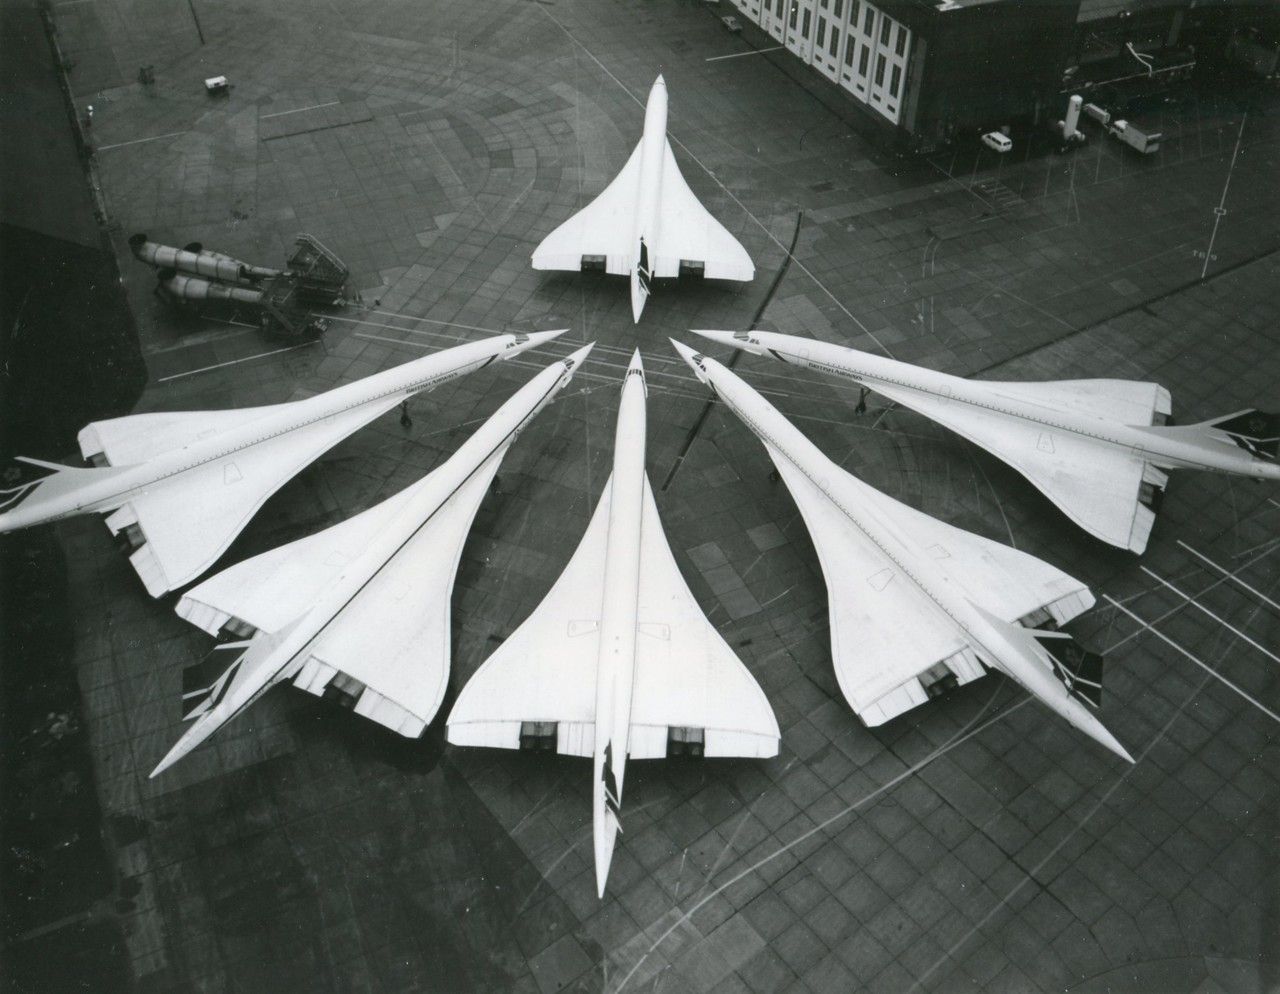 British Airways Concordes Parked Together